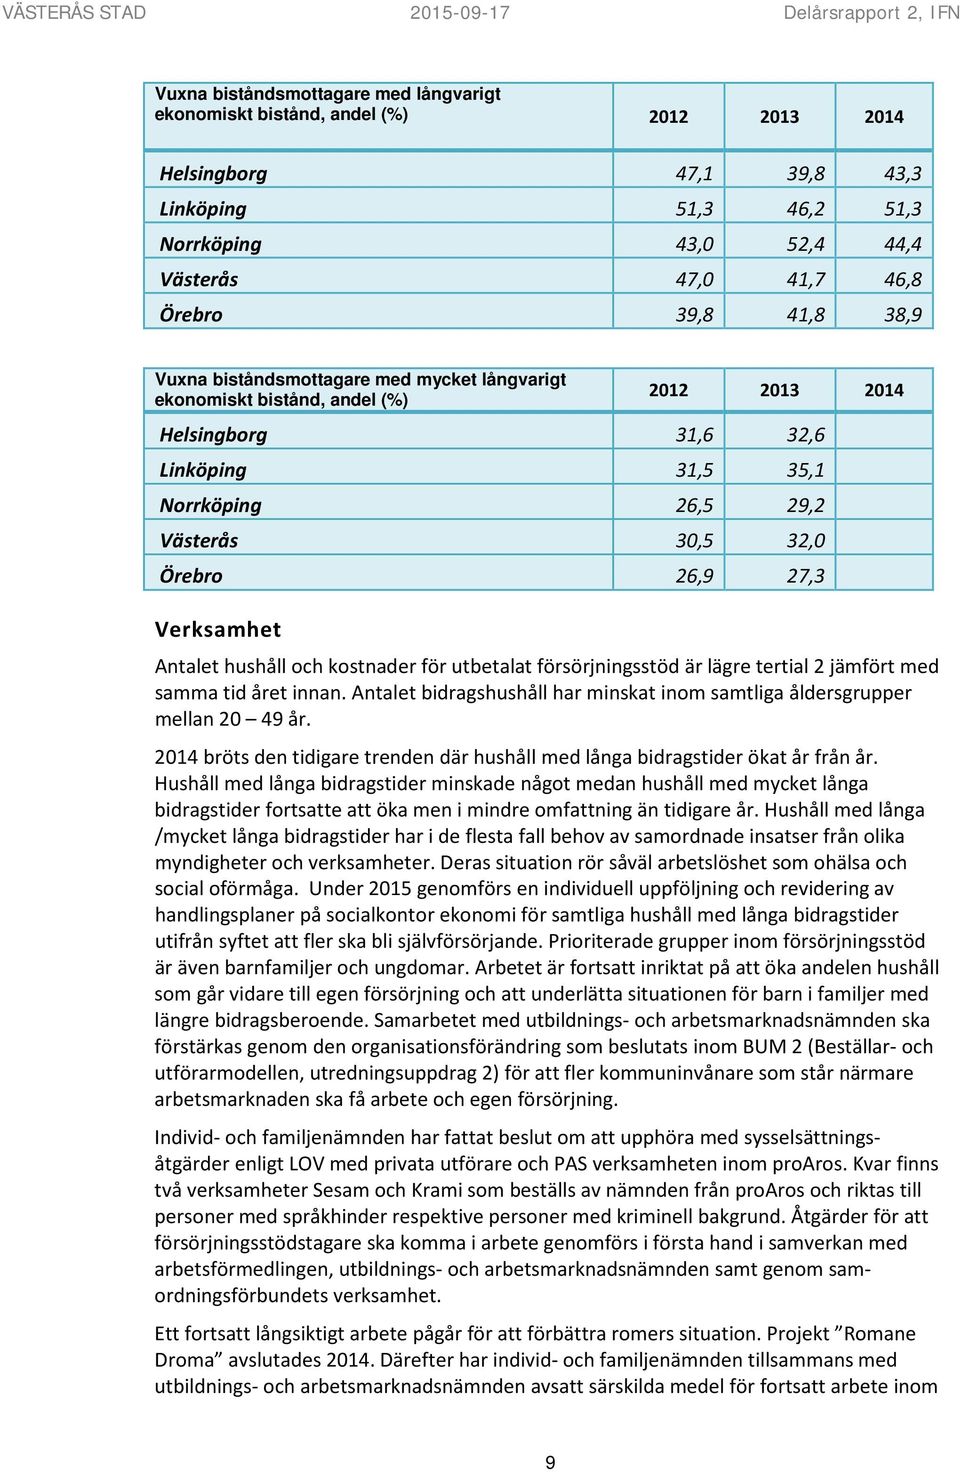 29,2 Västerås 30,5 32,0 Örebro 26,9 27,3 Verksamhet Antalet hushåll och kostnader för utbetalat försörjningsstöd är lägre tertial 2 jämfört med samma tid året innan.